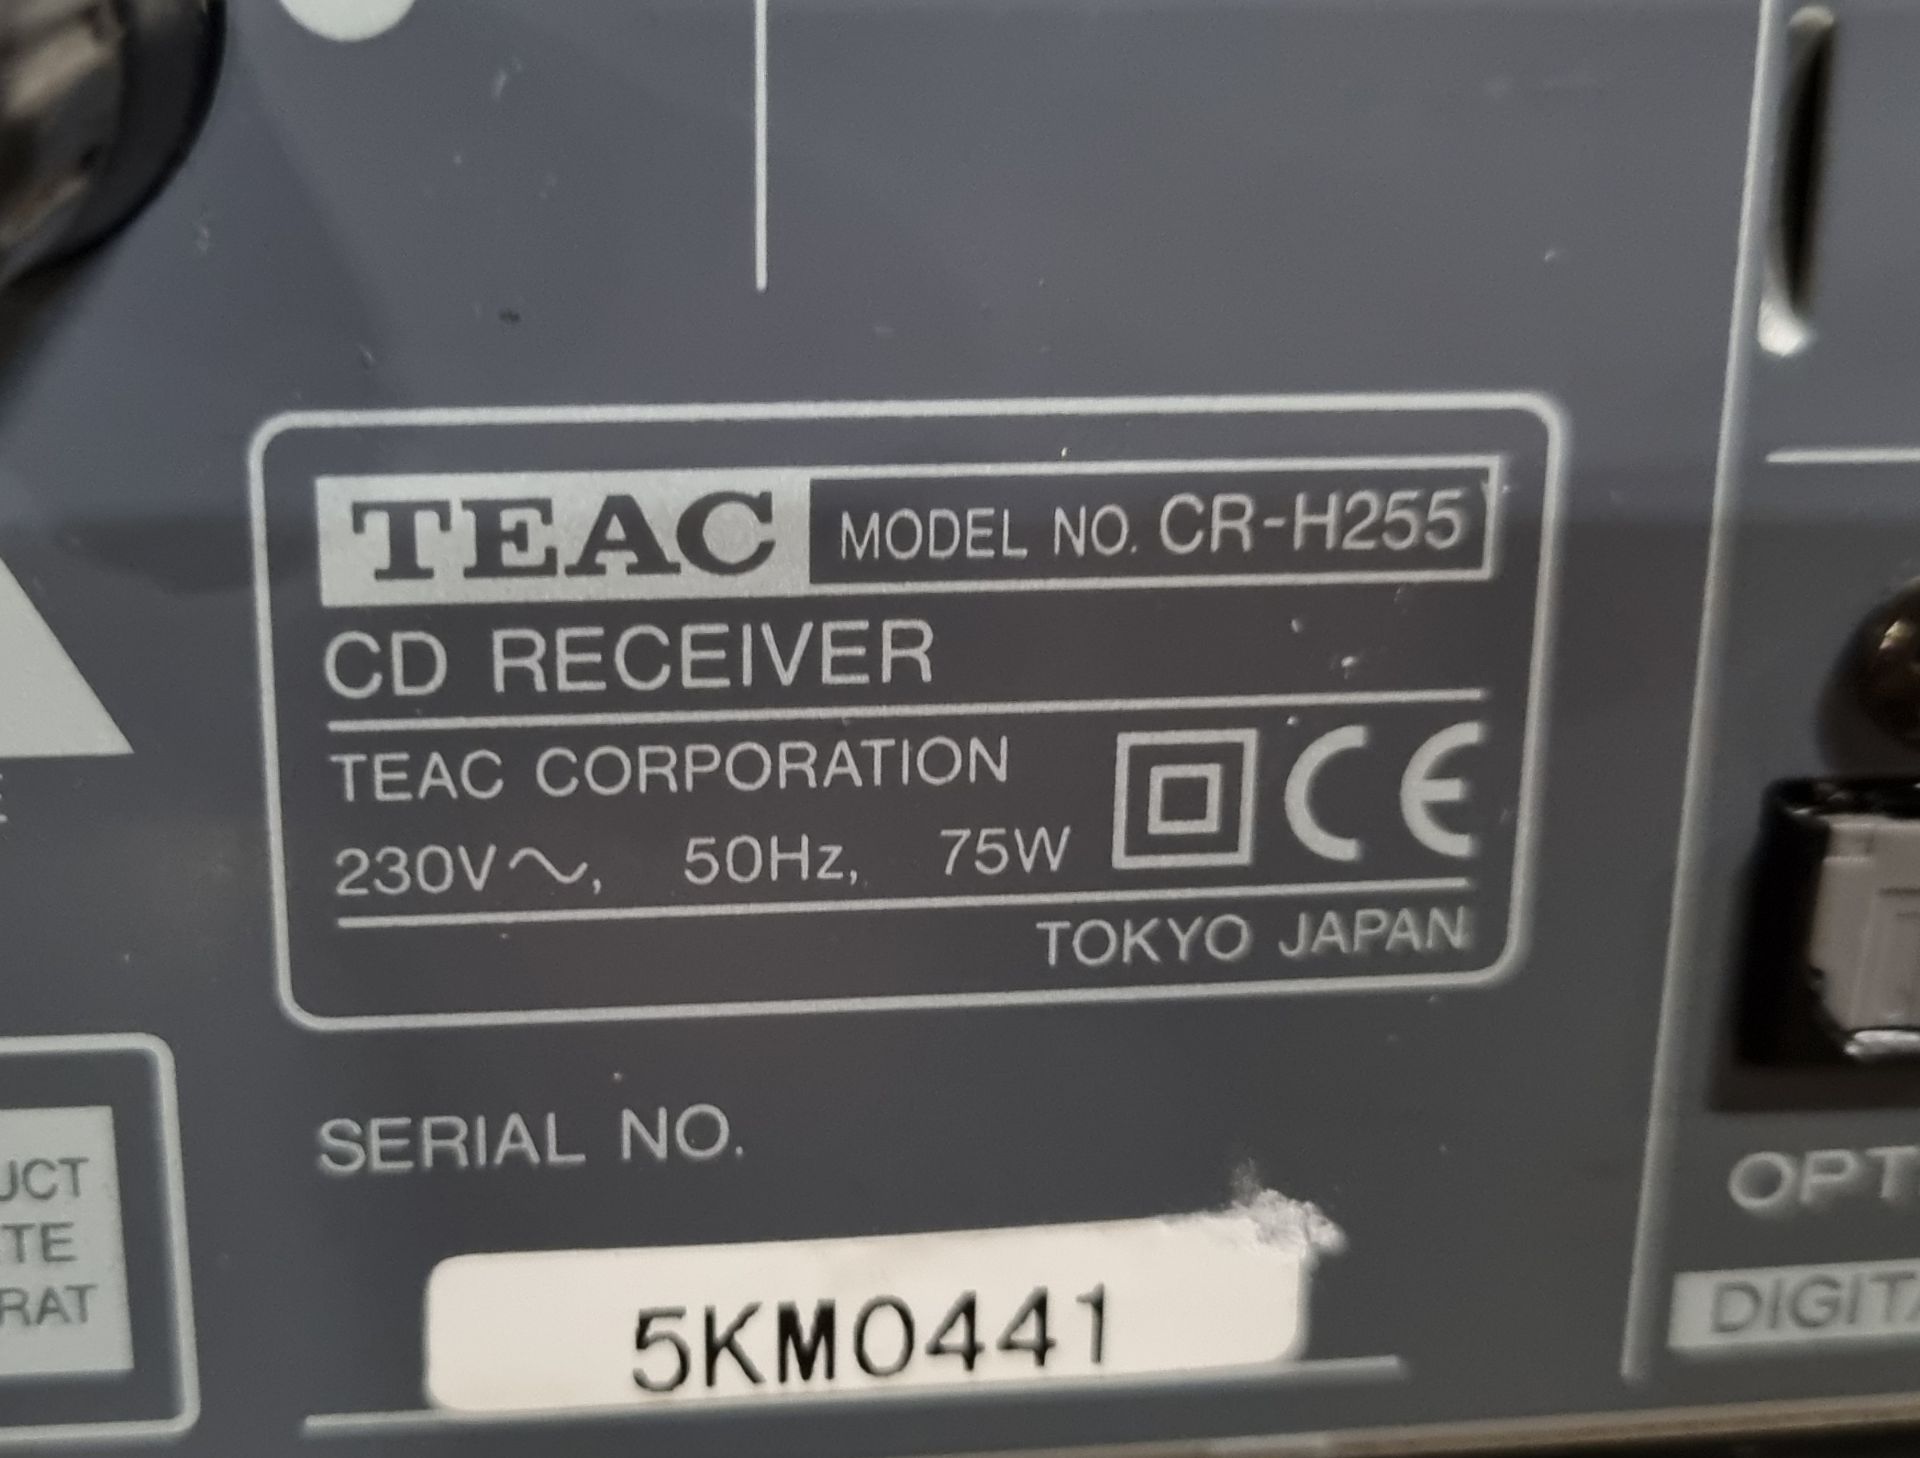 8x TEAC CR-H255 CD receiver units - Silver, 11x TEAC CR-H250 CD receiver units - Silver & more - Image 7 of 7